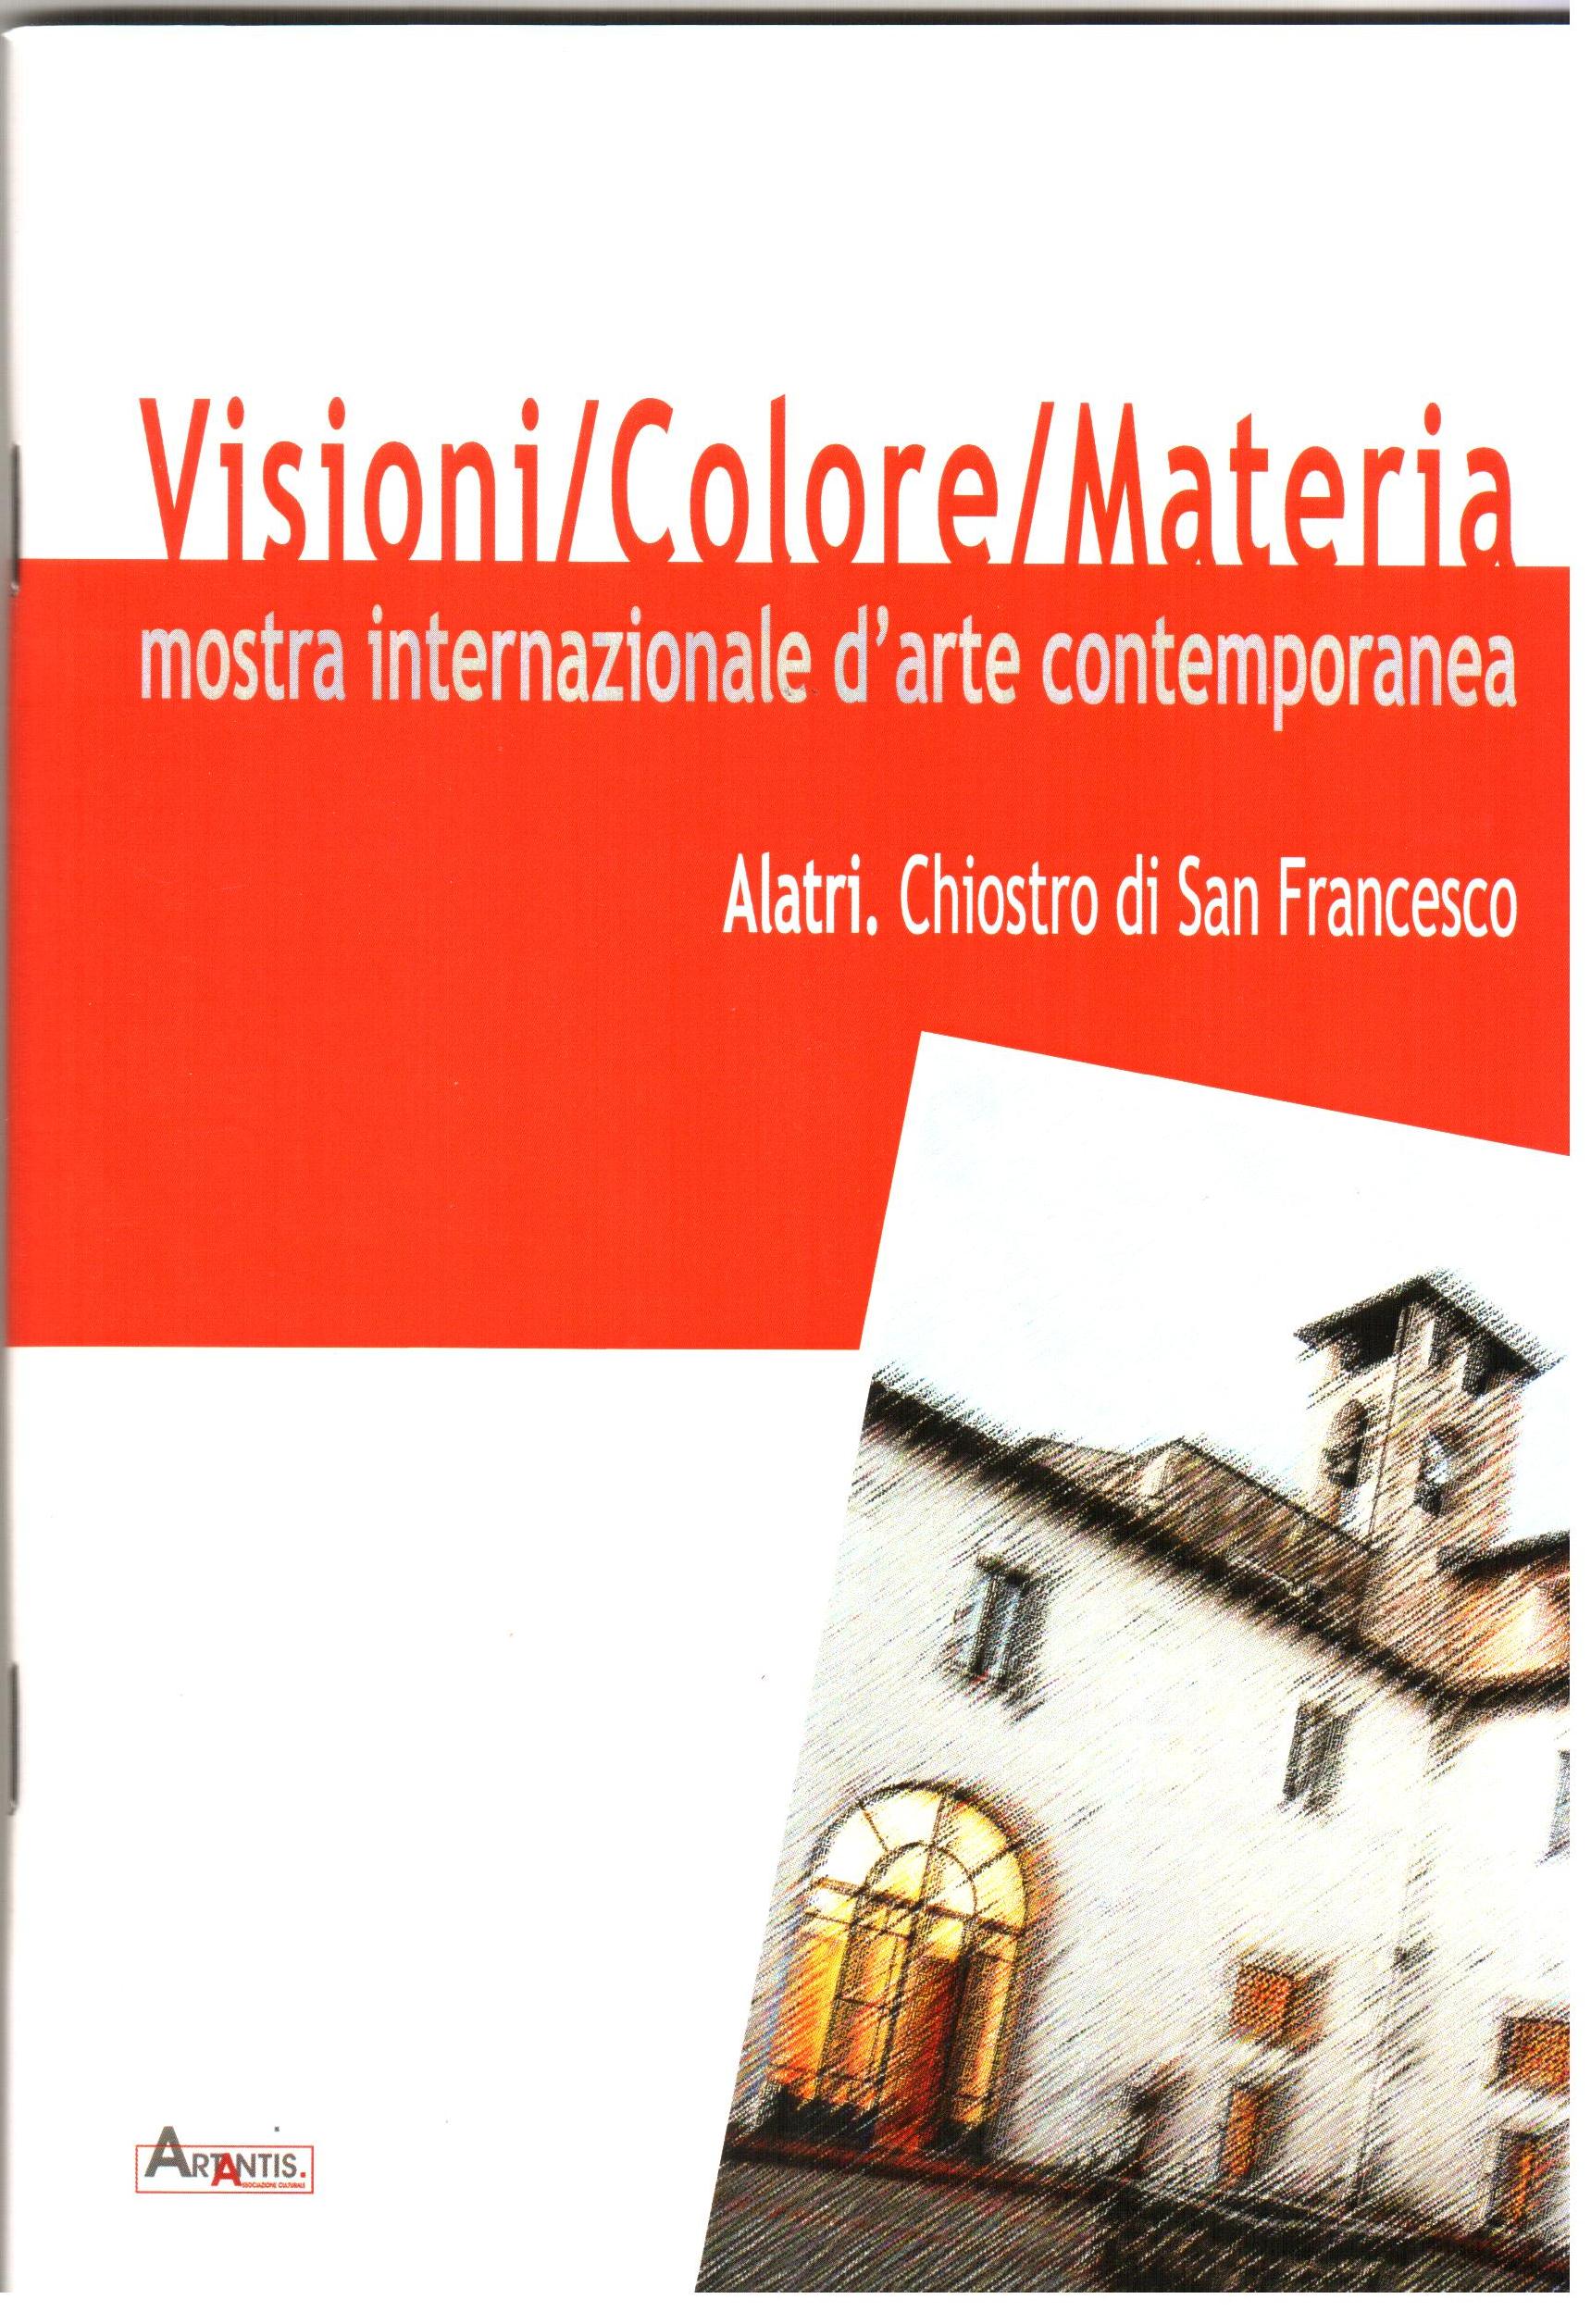 Credits, Visioni/Colore/Materia, Mostra internazionale d'arte contemporanea 2014, Alatri (FR) Chostro di San Francesco, Pasquale Mastrogiacomo, Acerno (SA).